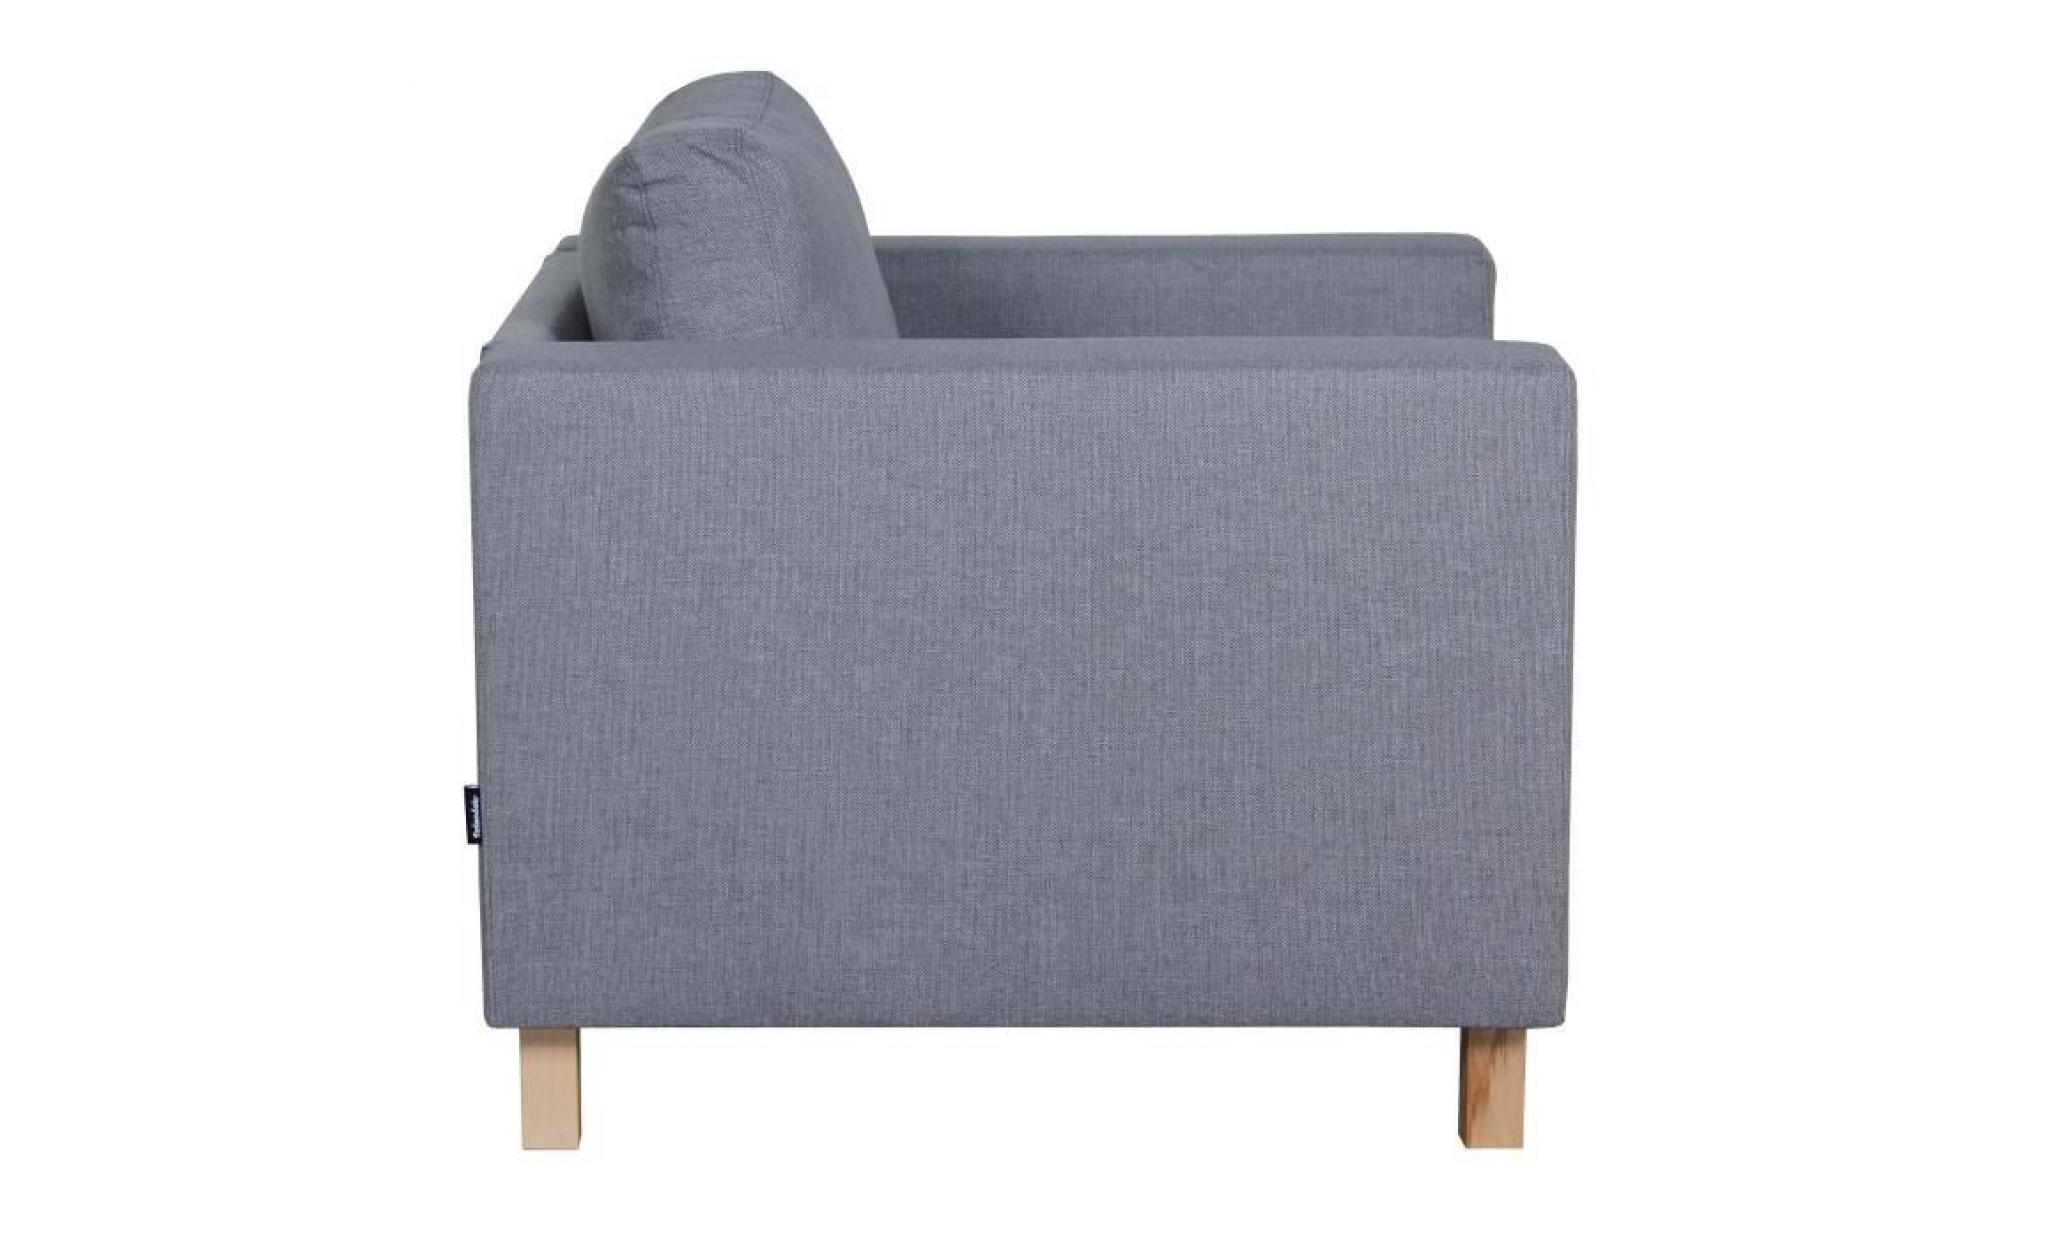 finlandek fauteuil sven   tissu gris clair   scandinave   l 92 x p 92 cm pas cher